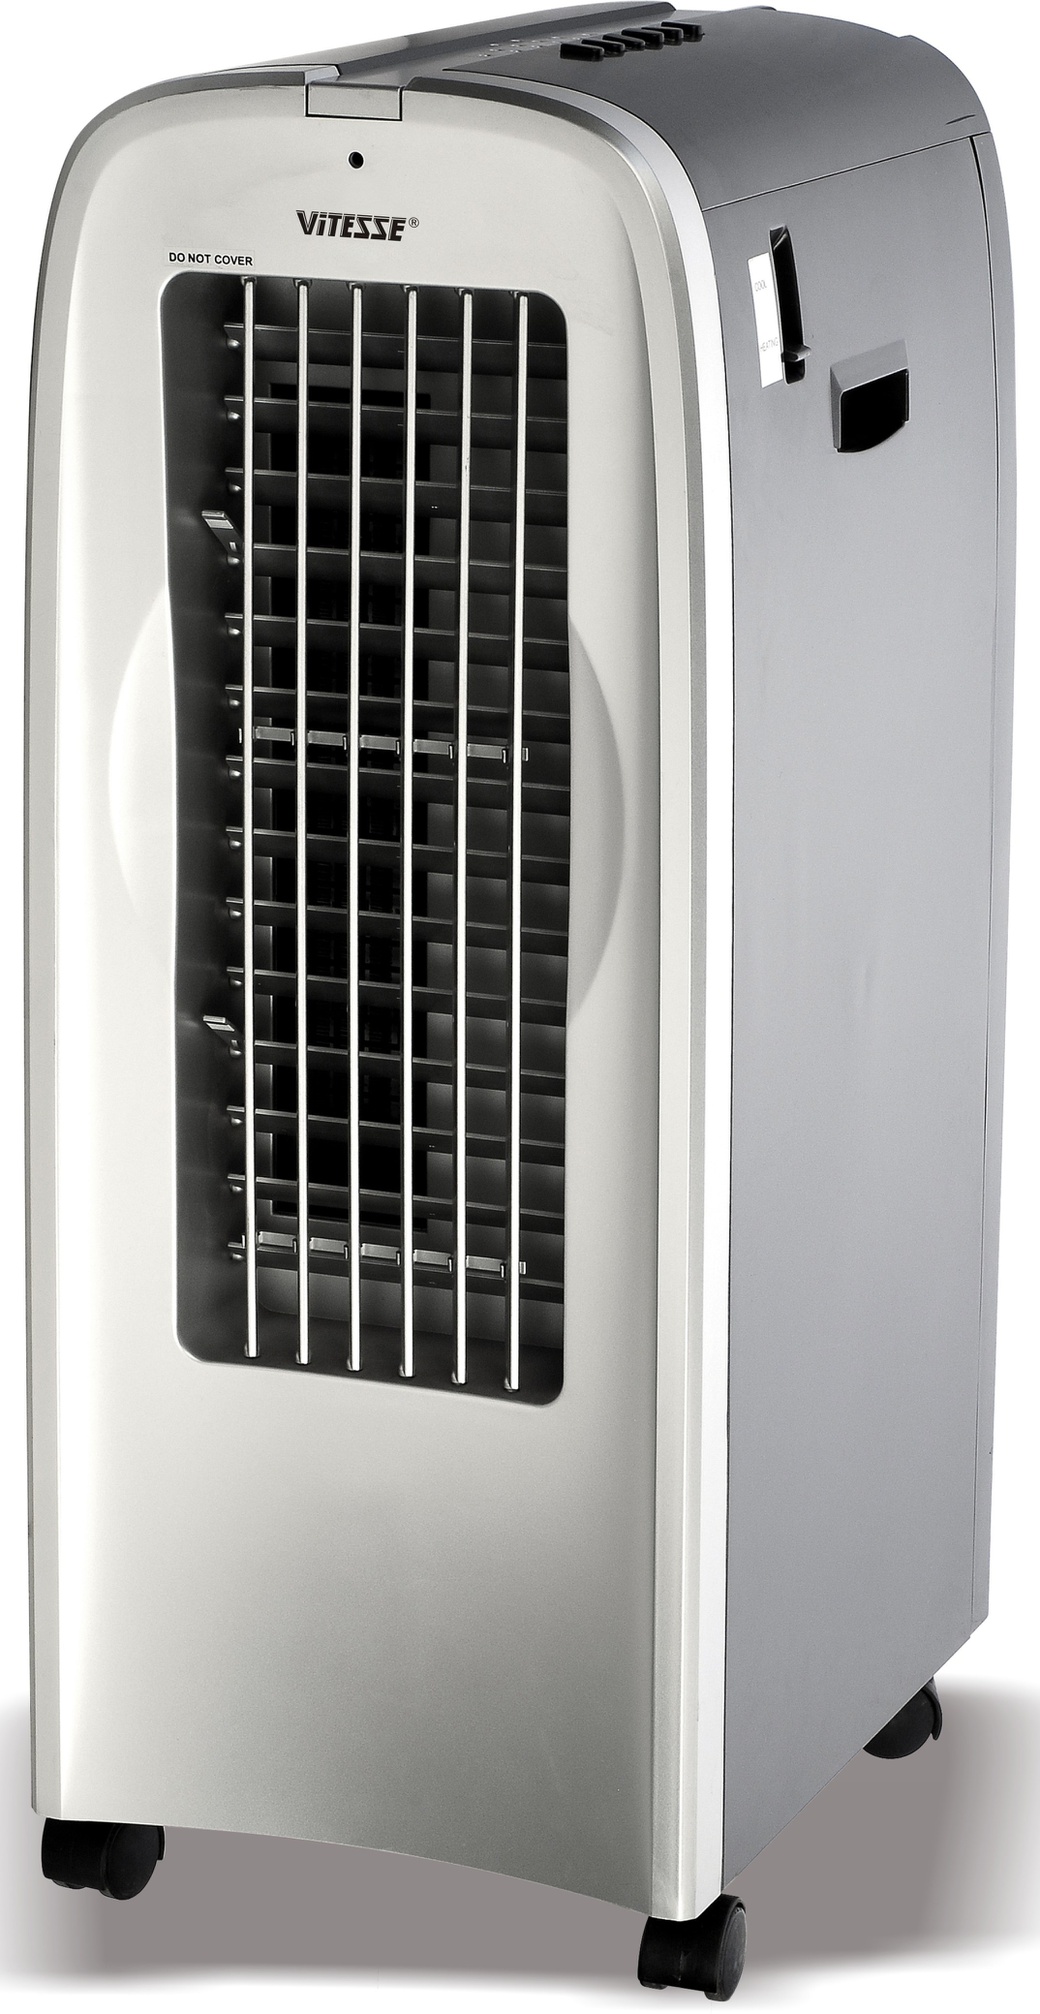 Био-климатизатор 5 в 1 Vitesse: Воздухоохладитель, обогреватель, увлажнитель воздуха, ионизатор и вентилятор VS-868 фото